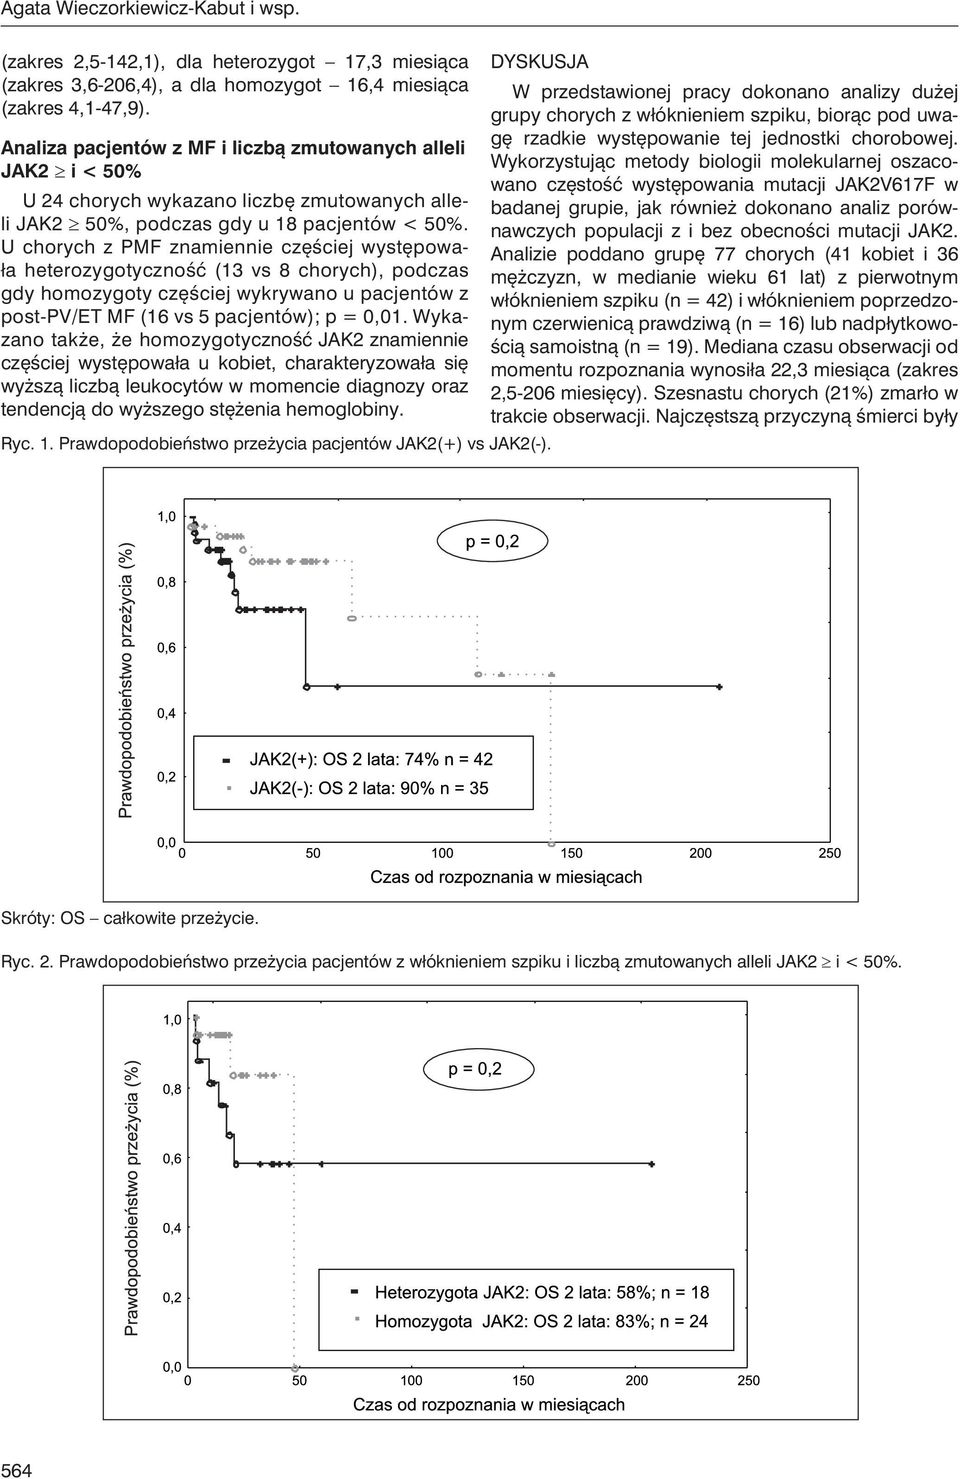 U chorych z PMF znamiennie częściej występowała heterozygotyczność (13 vs 8 chorych), podczas gdy homozygoty częściej wykrywano u pacjentów z post-pv/et MF (16 vs 5 pacjentów); p = 0,01.